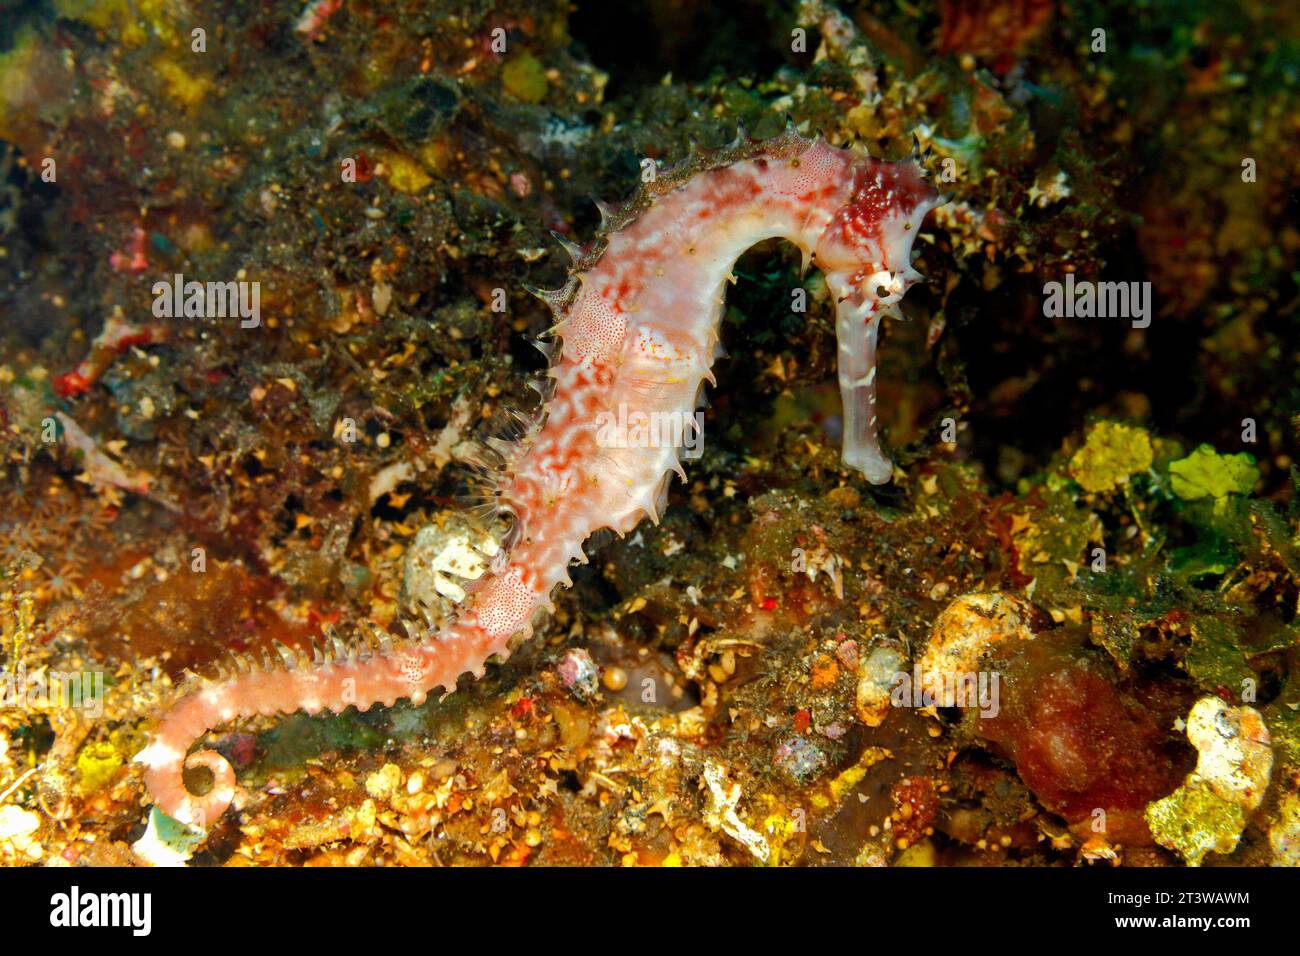 Cavalluccio marino spinoso, noto anche come cavalluccio marino spinoso, Hippocampus histrix, che nuota sulla barriera corallina sott'acqua, in cerca di cibo. Tulamben, Bali, Indonesia. Foto Stock